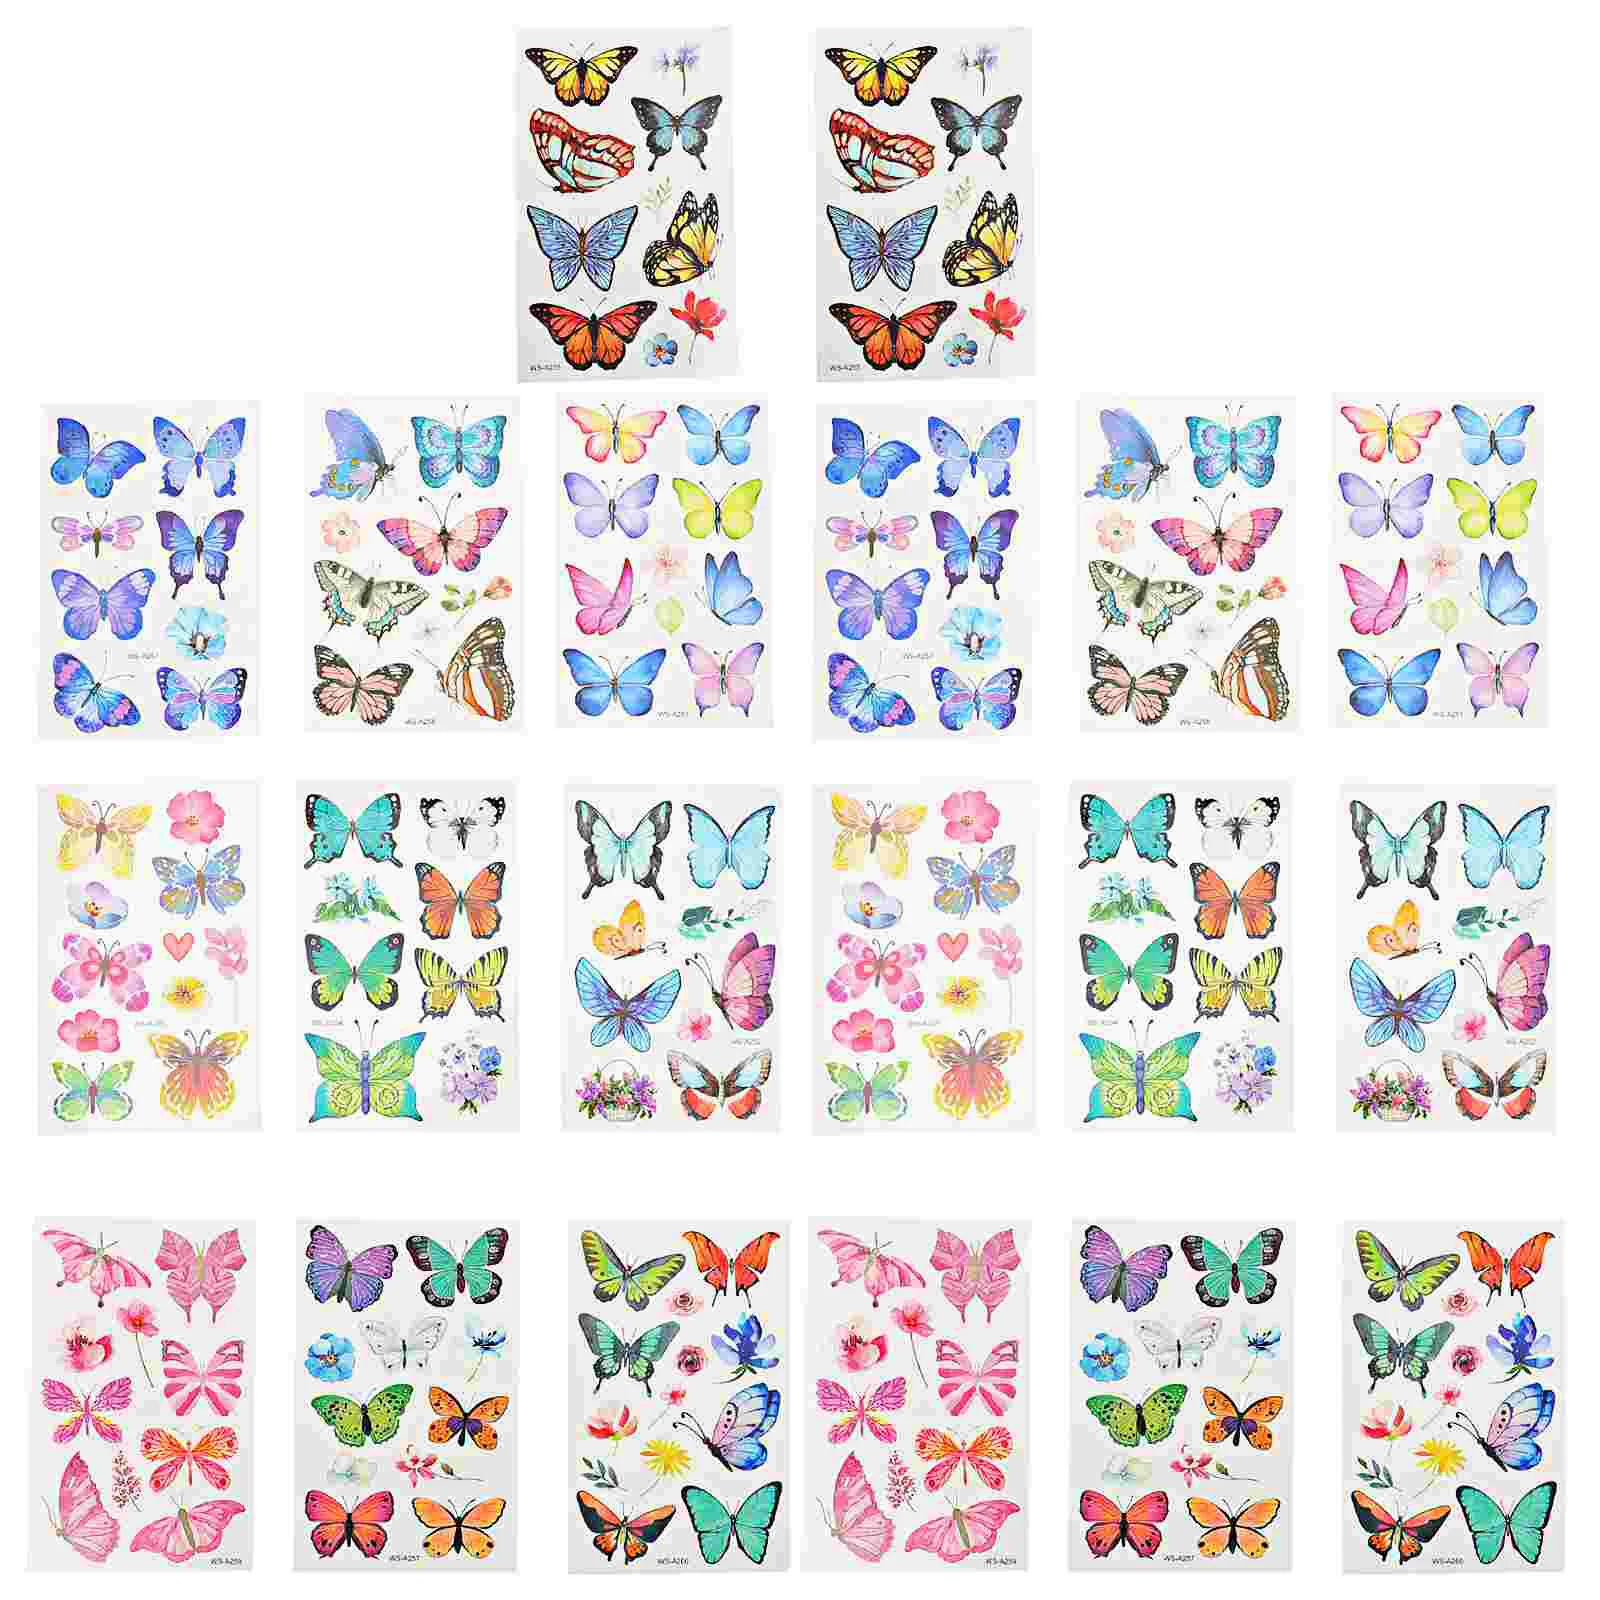 

20 Sheets Body Butterfliess Temporary Tattoos for Children Glitter Girls Butterflies Body Kids Cartoon